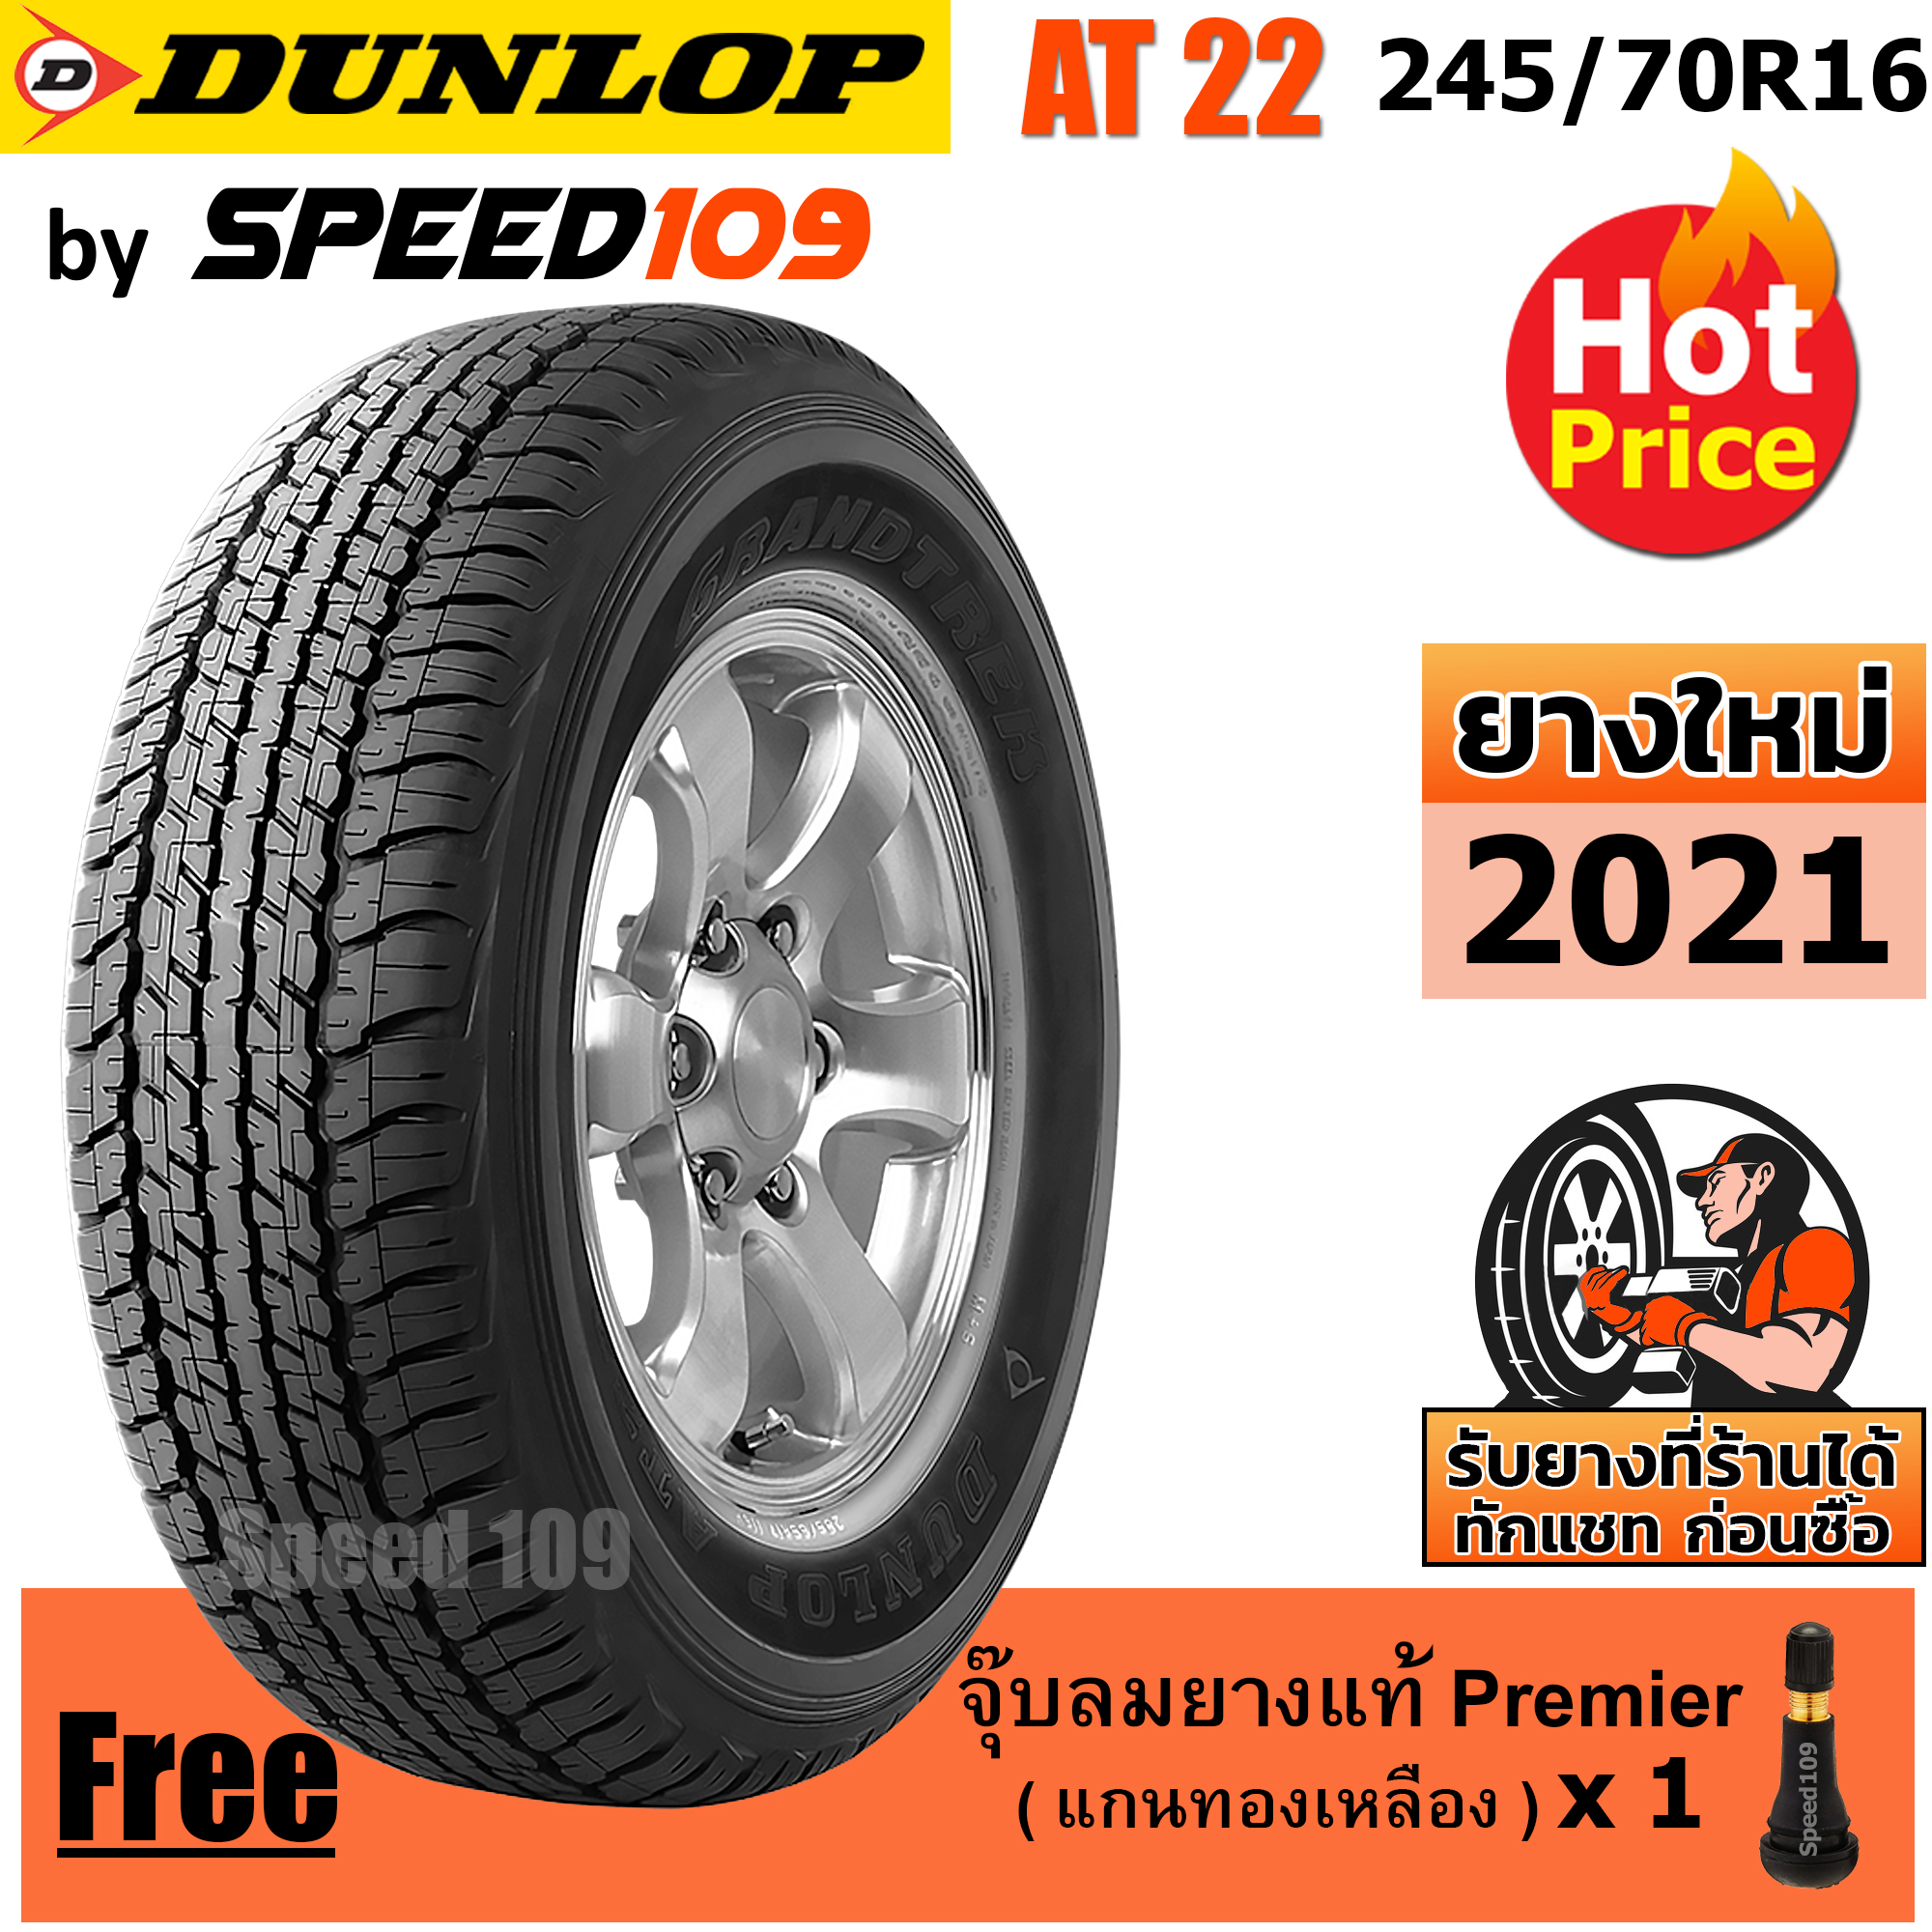 DUNLOP ยางรถยนต์ ขอบ 16 ขนาด 245/70R16 รุ่น Grandtrek AT22 - 1 เส้น (ปี 2021)